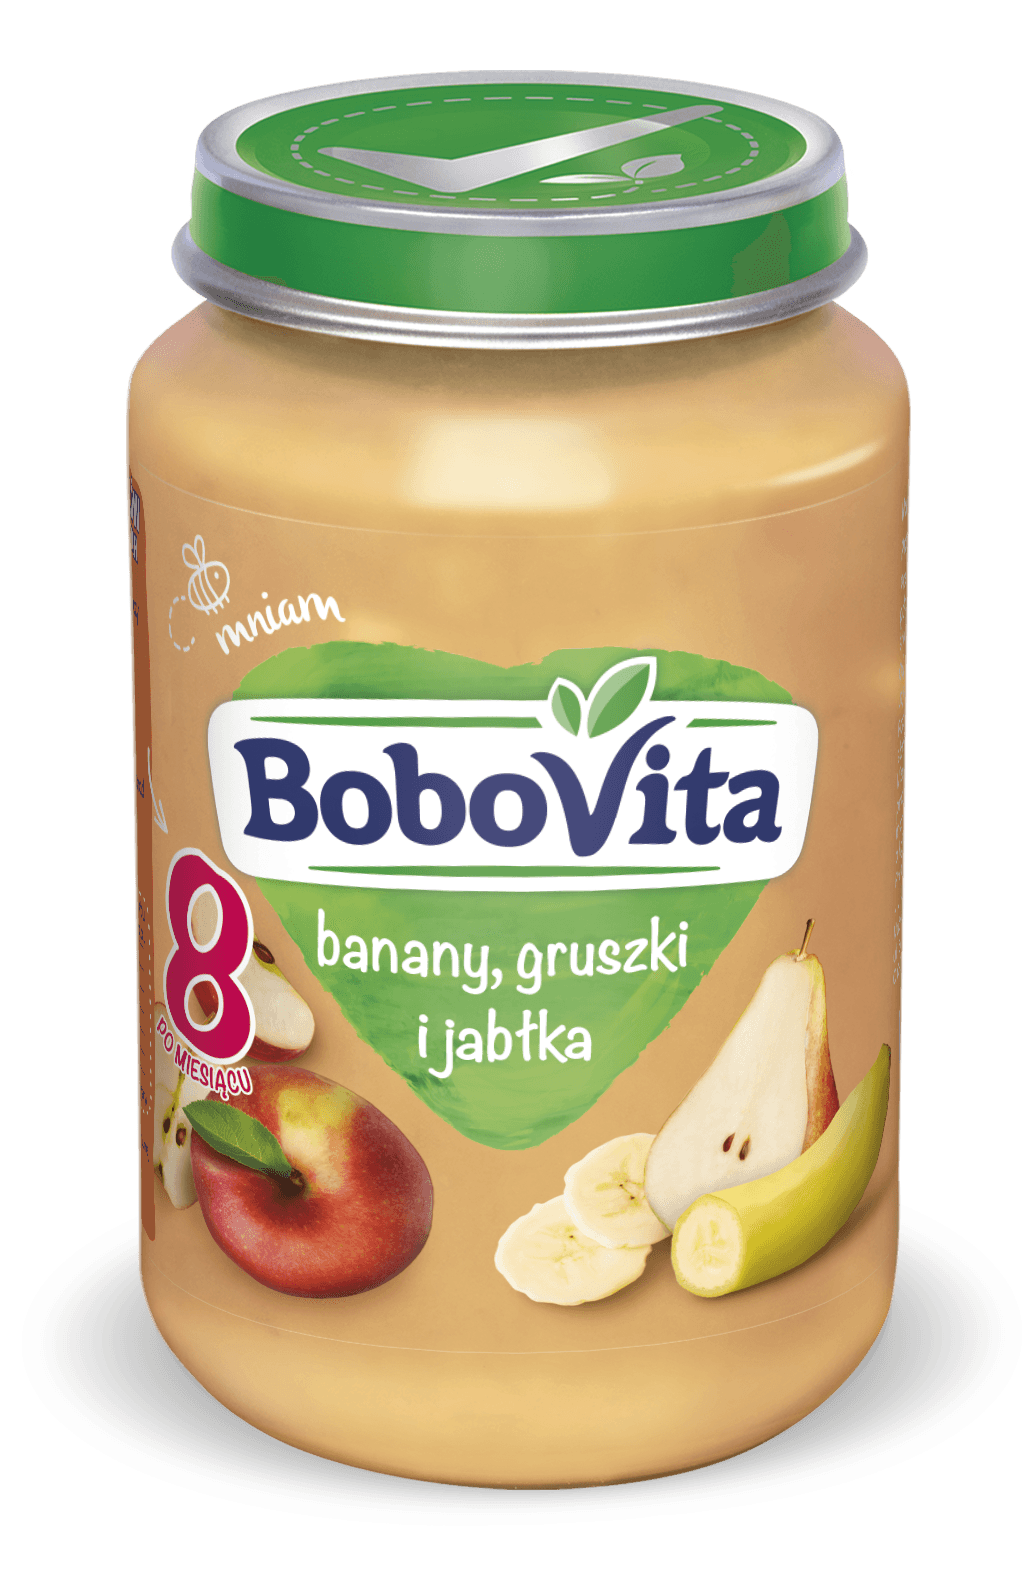 BV_Sloik 190g_banany_gruszki_jablka_2021.png